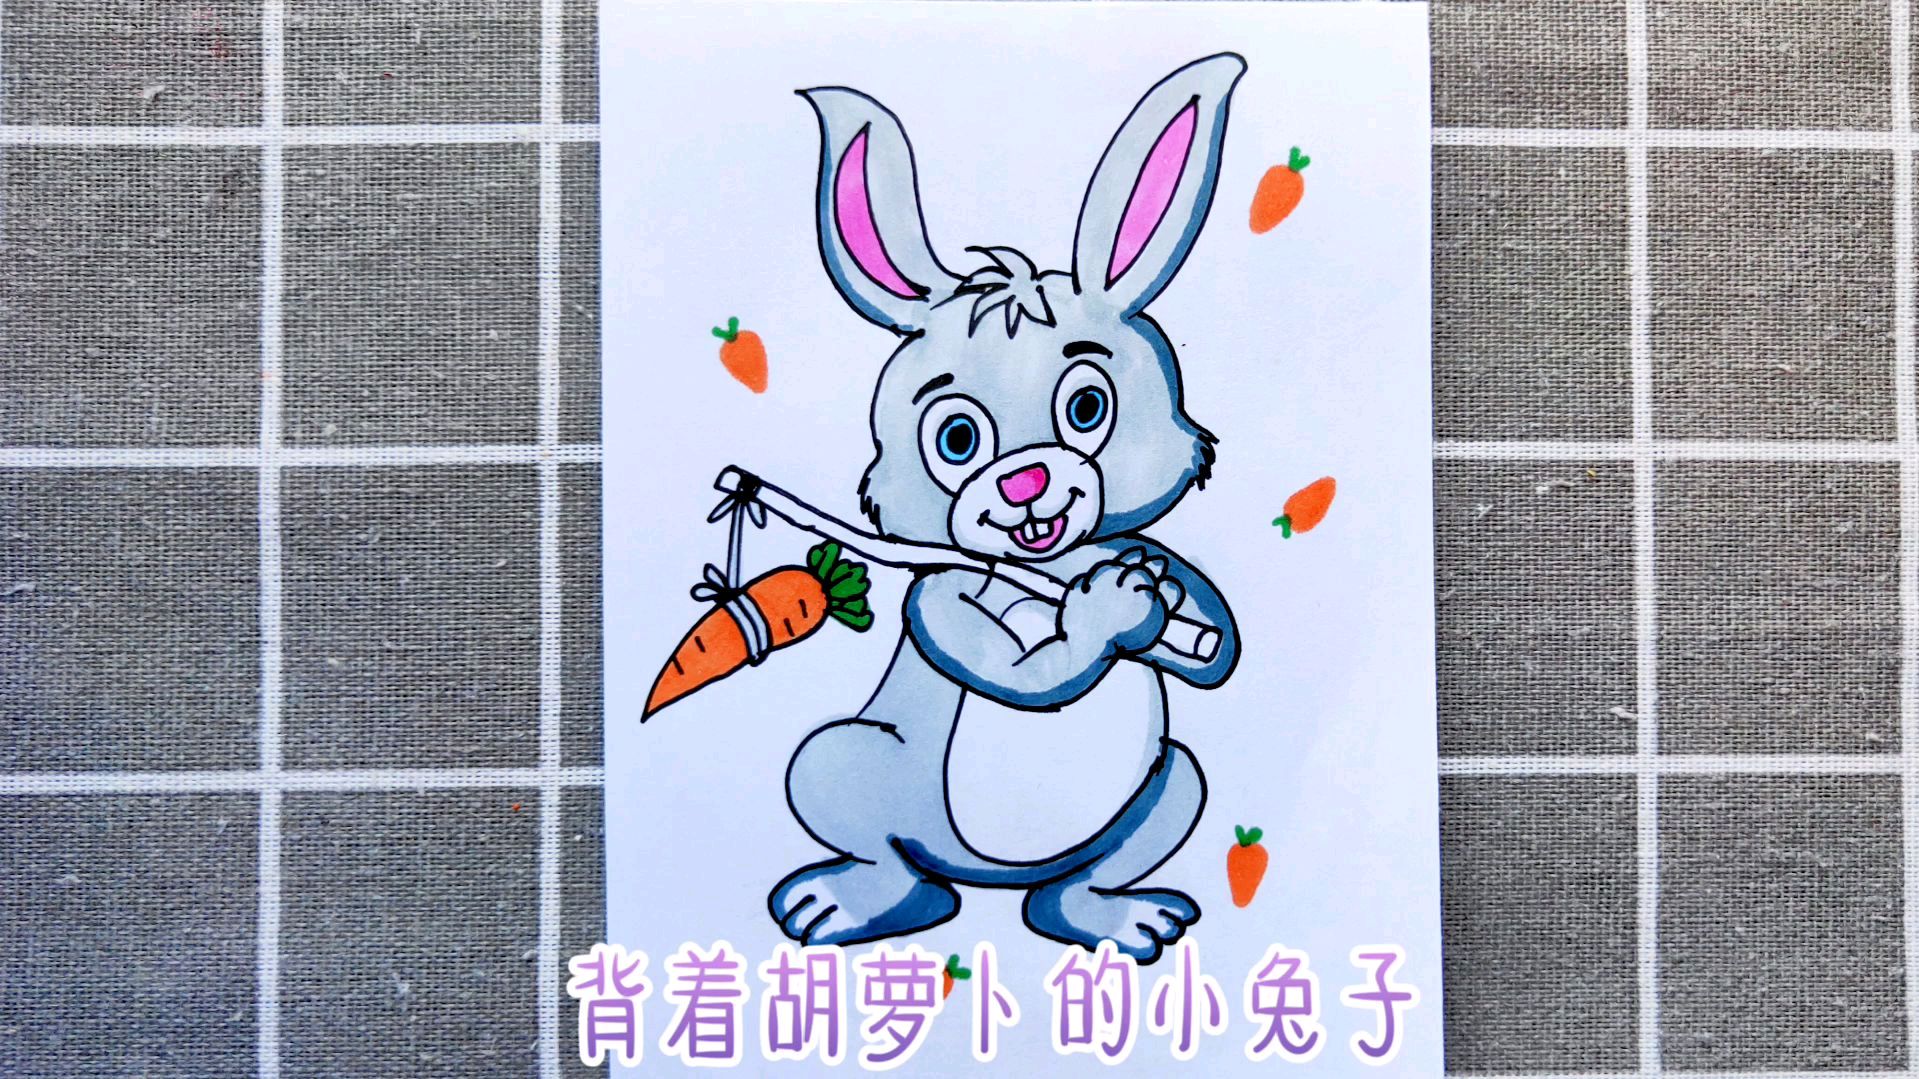 新款热销儿童卡通面具兔子猪老鼠獾面具圣诞节万圣节儿童演出道具-阿里巴巴